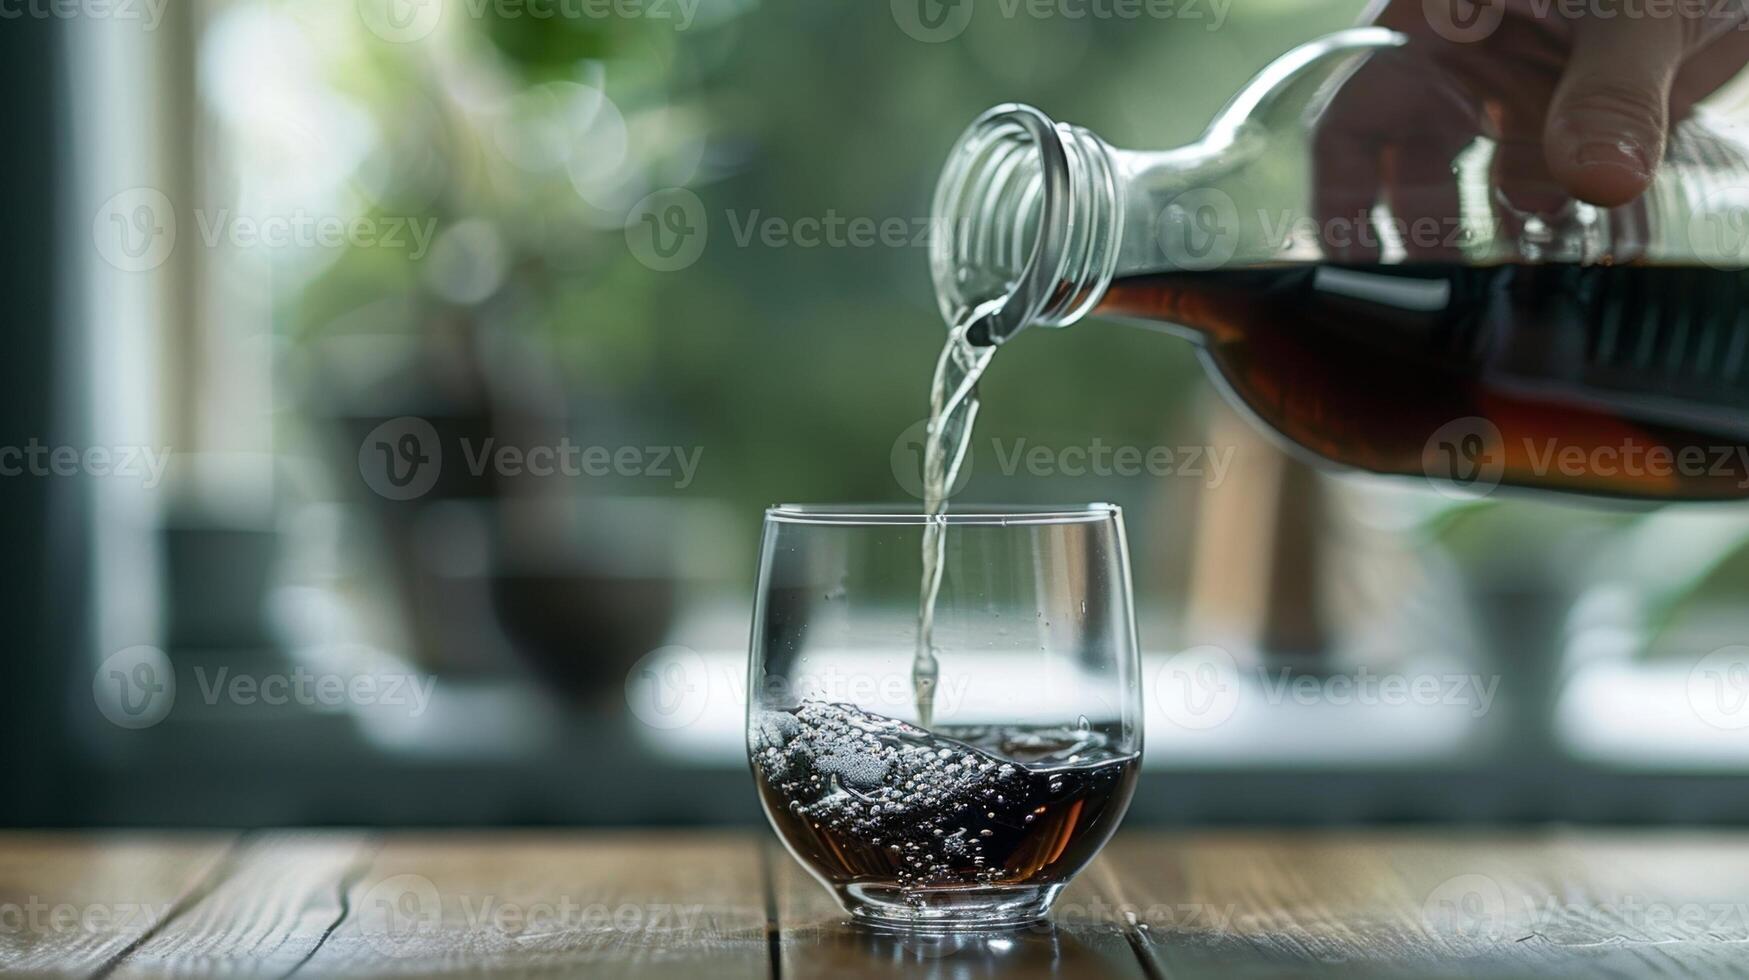 un persona torrencial un bebida dentro un vaso practicando consciente de parte controlar foto